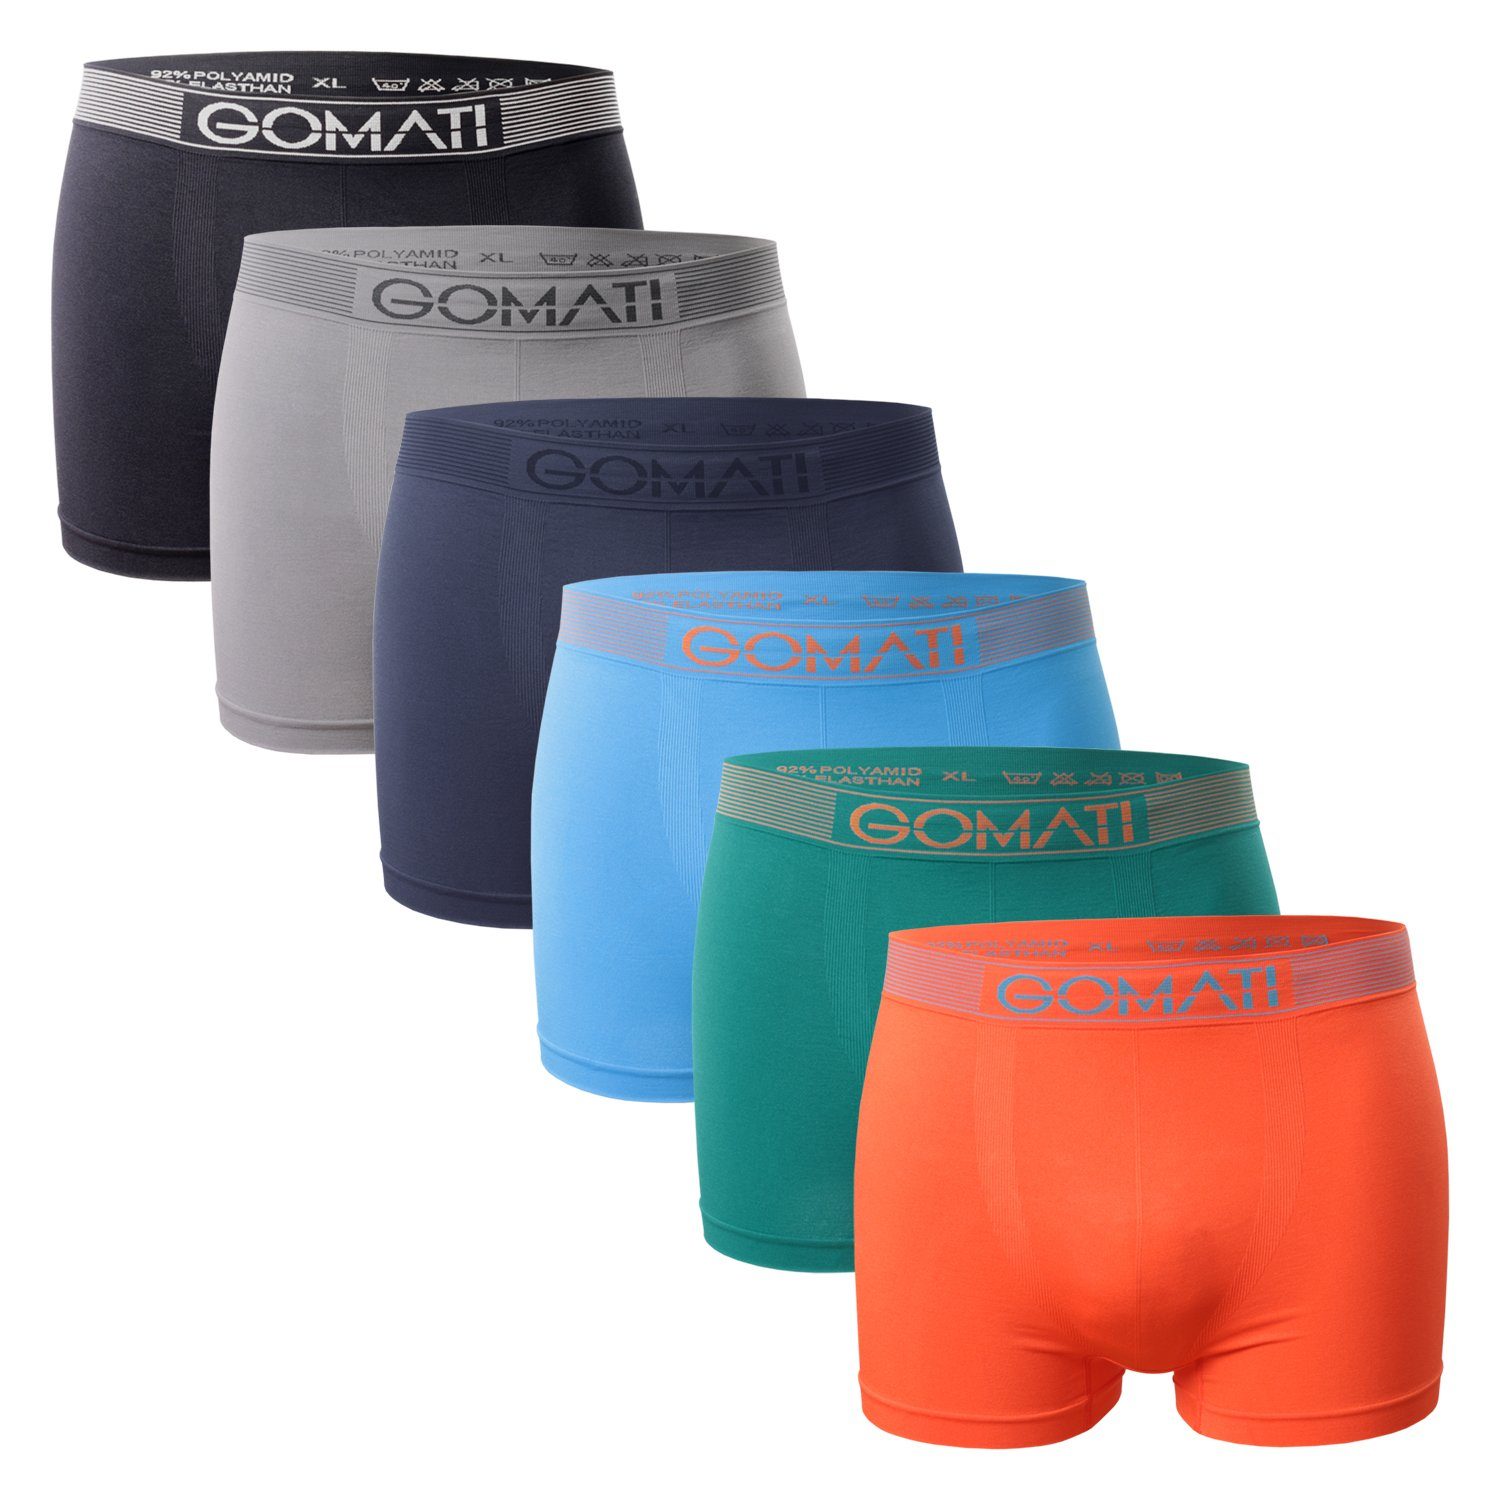 Gomati Boxershorts Grey Microfaser-Elasthan Pack) Boxershorts Multicolor Pants Herren / Seamless Mix (6er